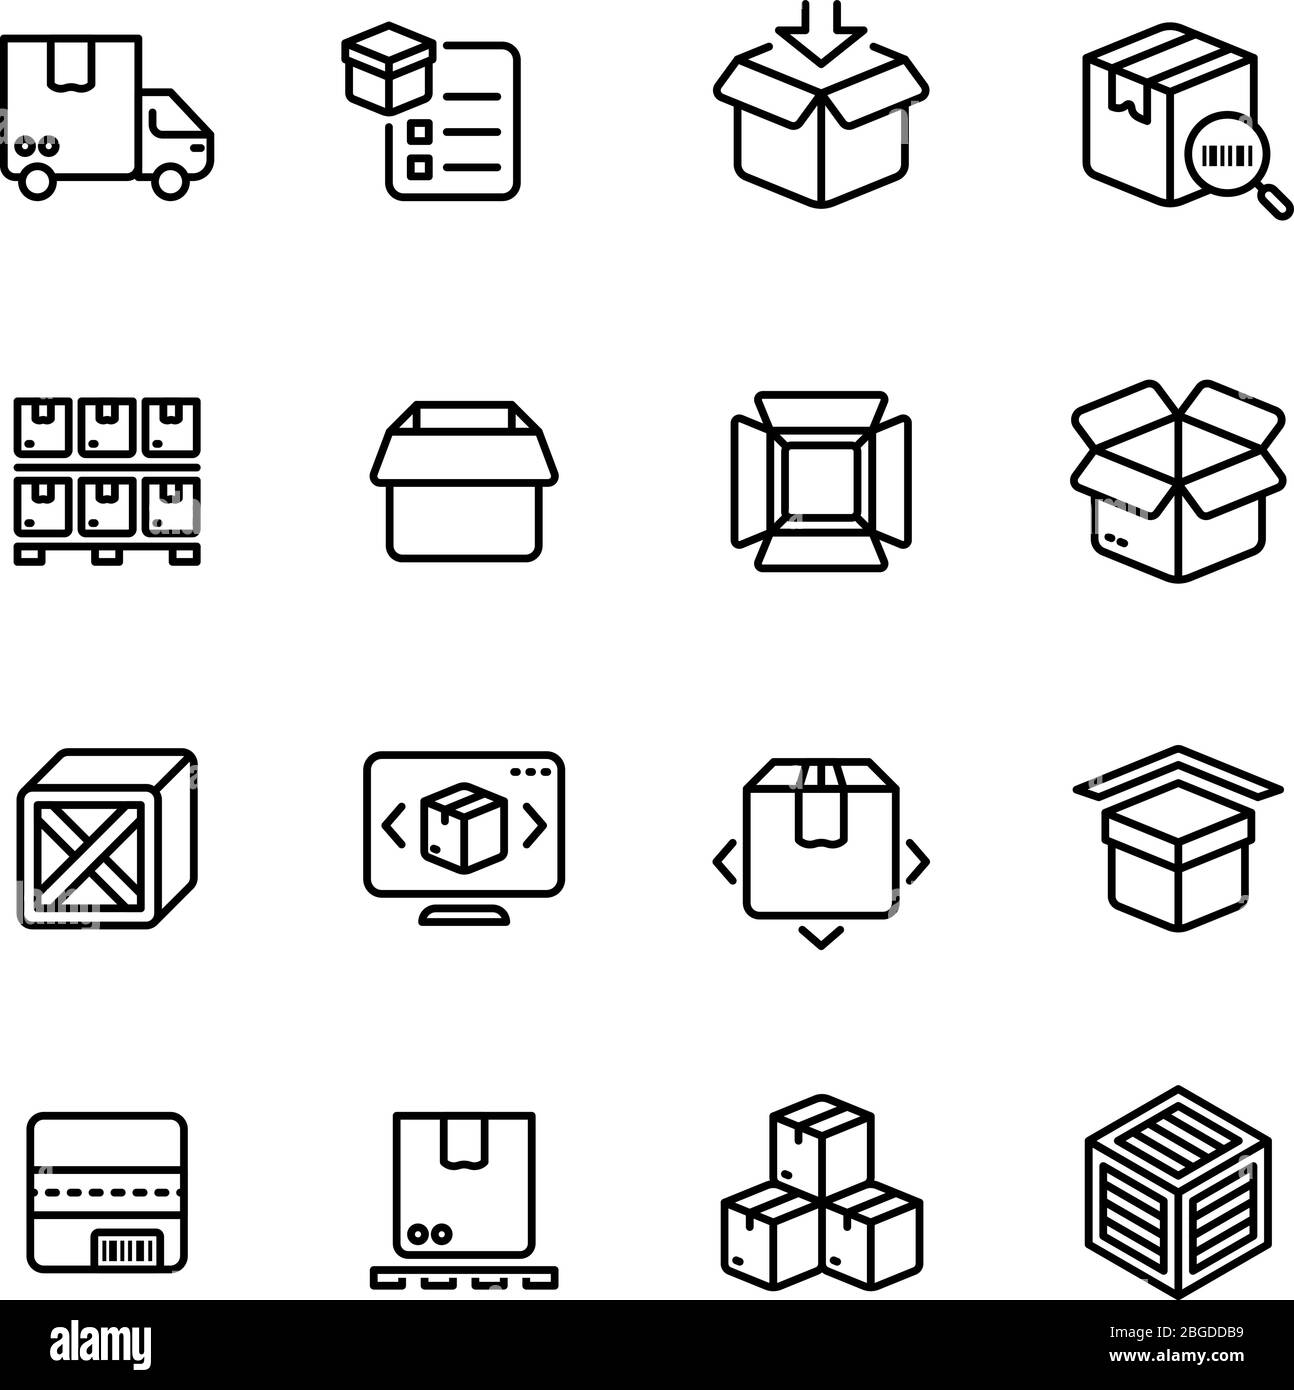 Symbole für Produktpackungen. Vektorsymbole für die Umrissdarstellung von Box Warehous Delivery Service Verpackung, dünne Linie linear und Umriss Box und Container Illustration Stock Vektor